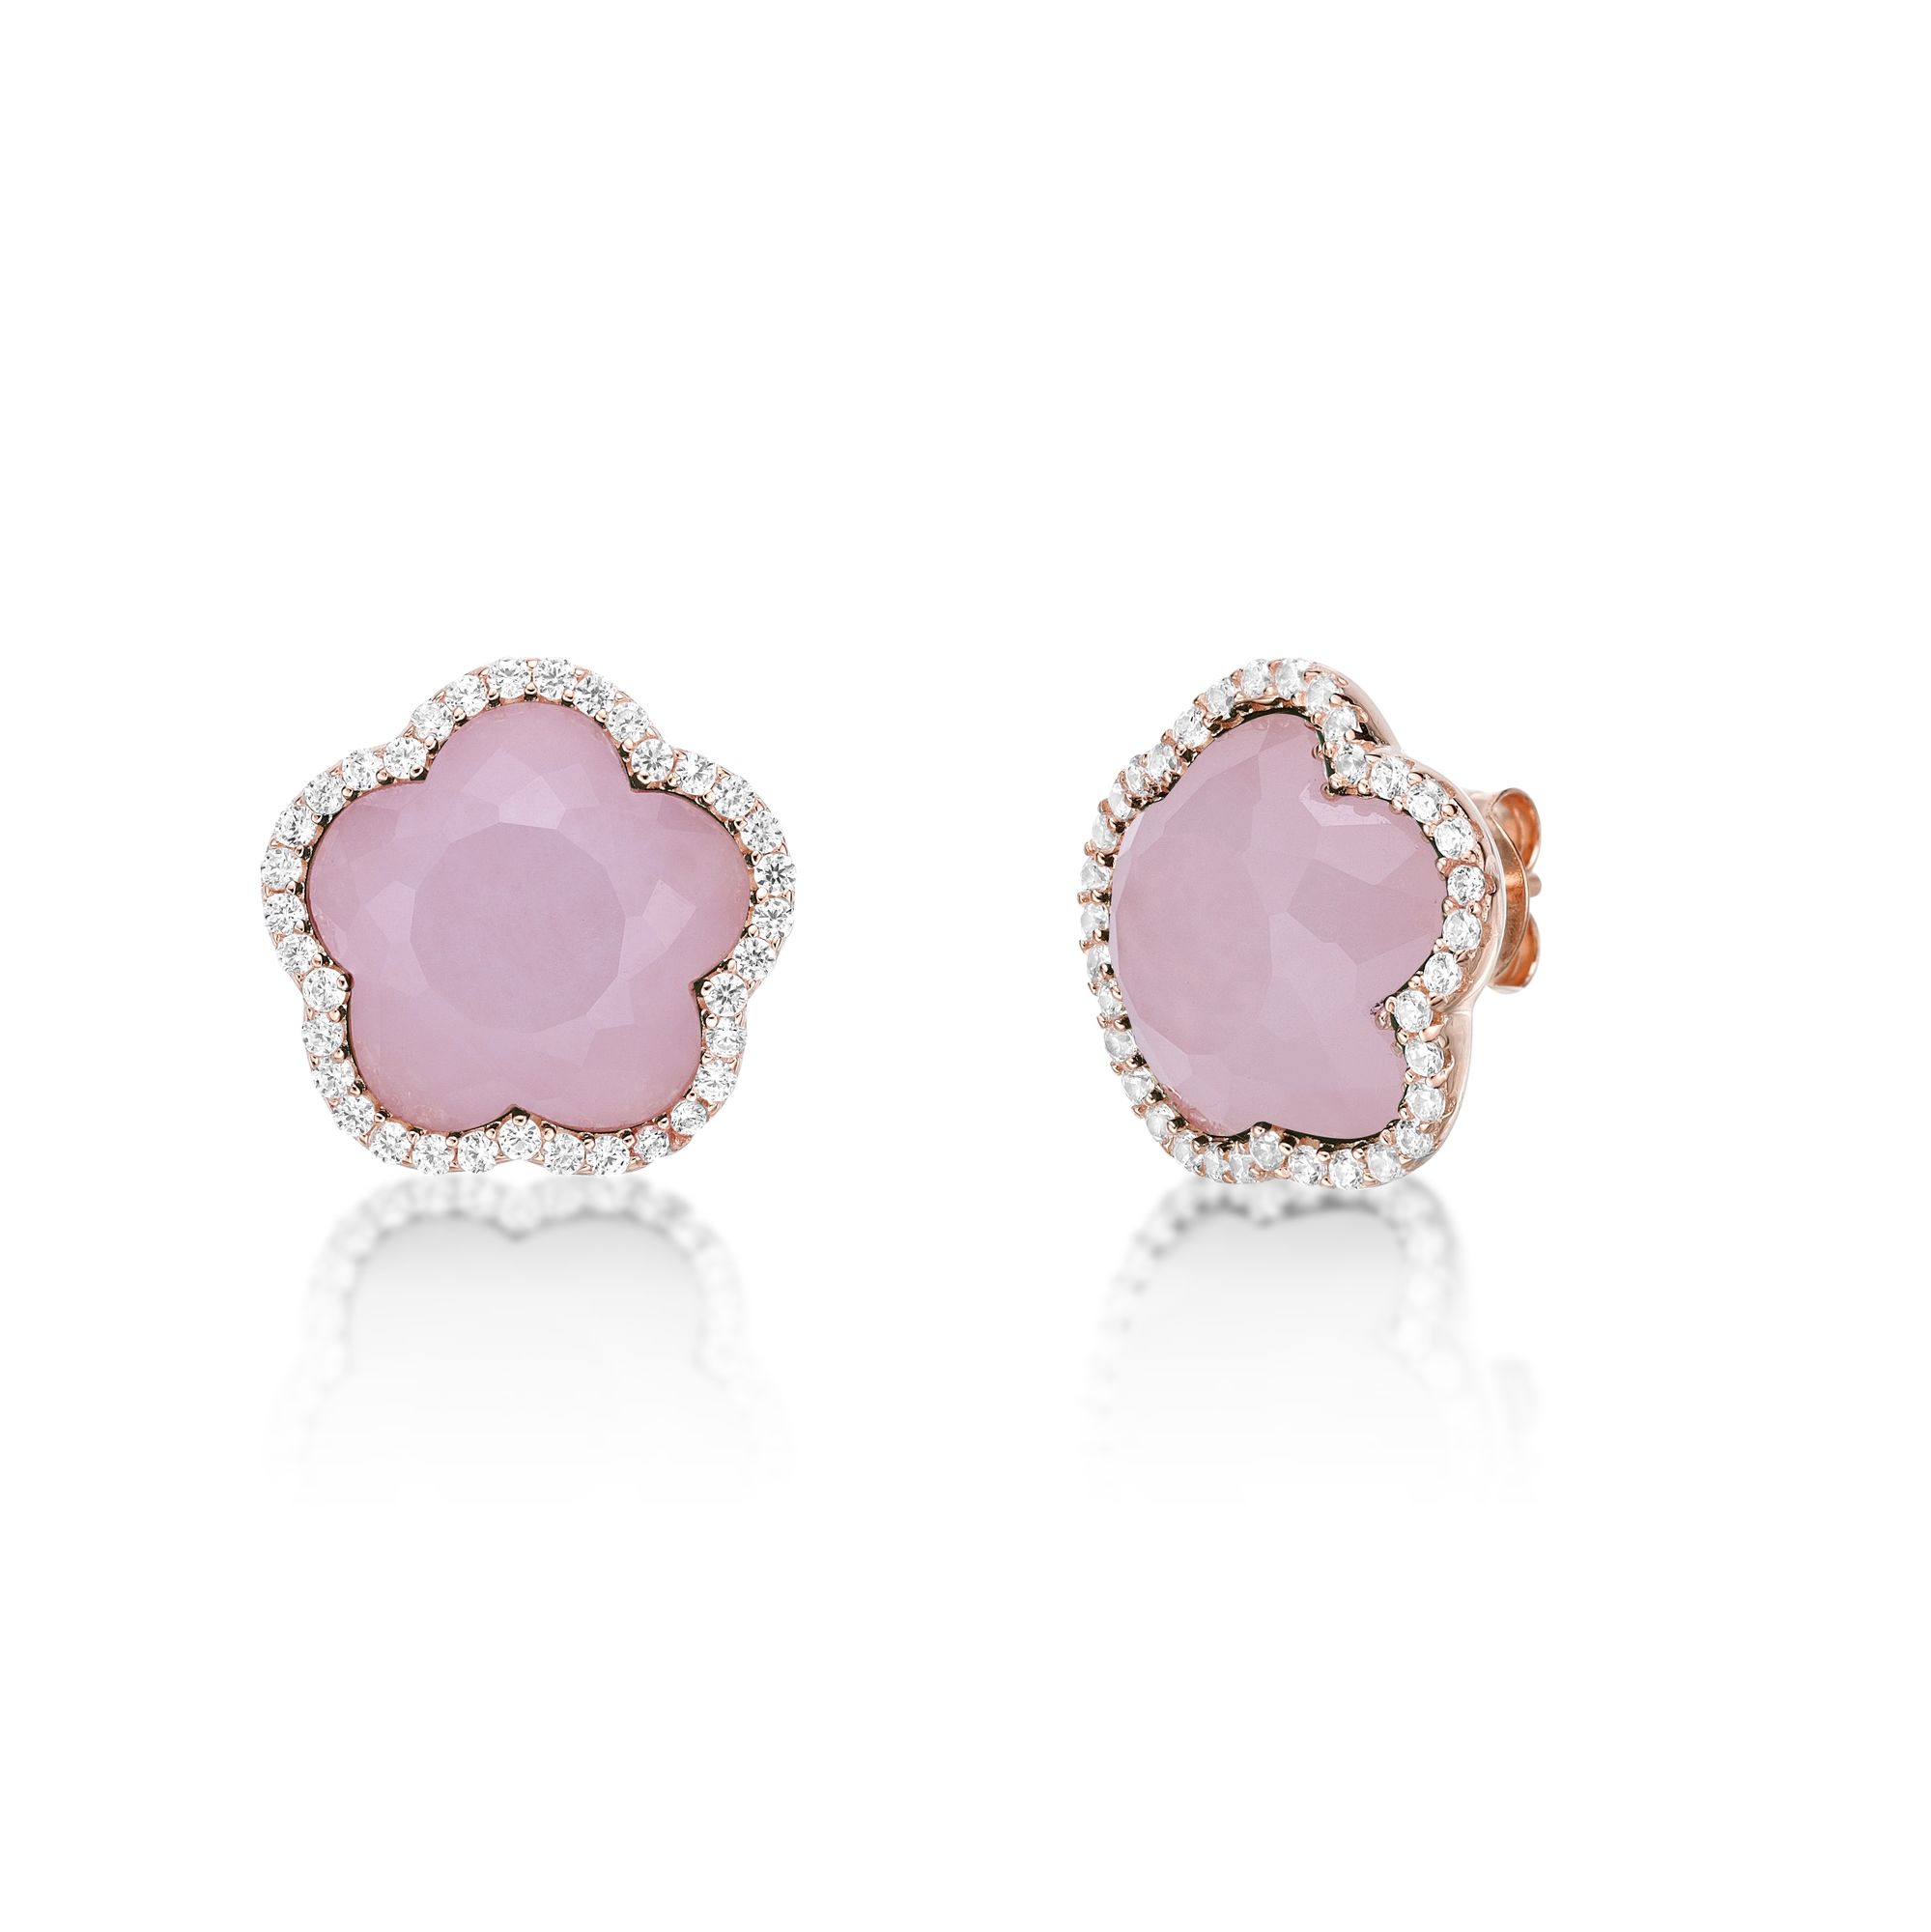 51209-earrings-flora-pink-sterling-silver-51209-2.jpg